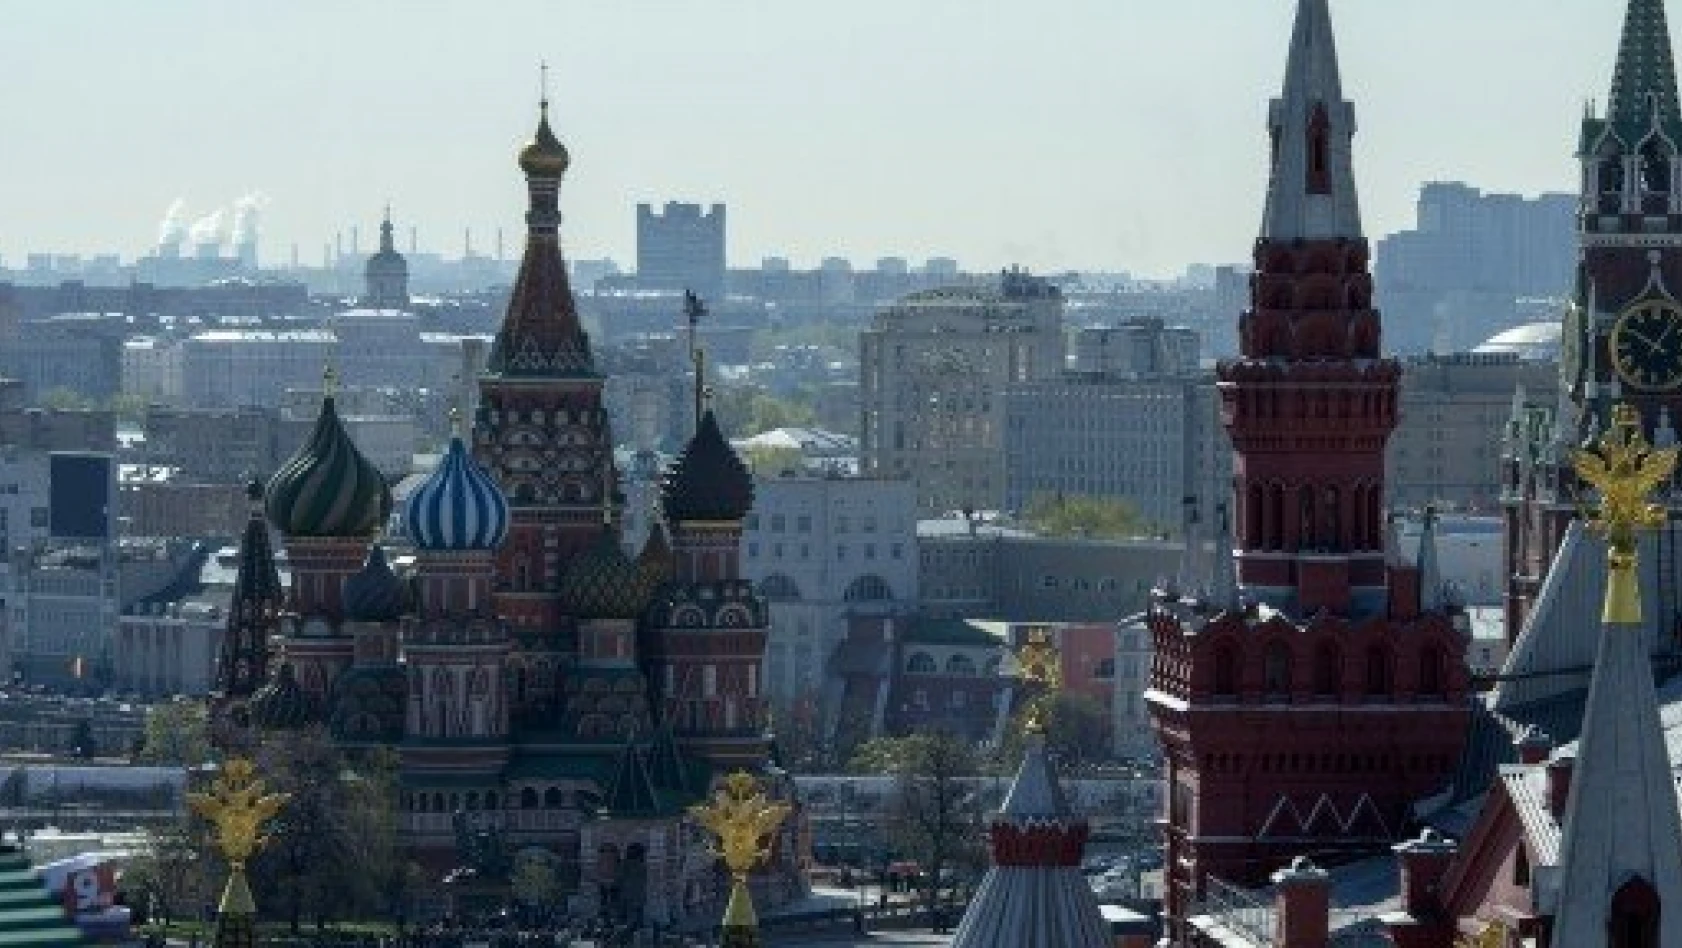 Rusya 24 başlıkta dünya lideri tank, kürtaj, votka